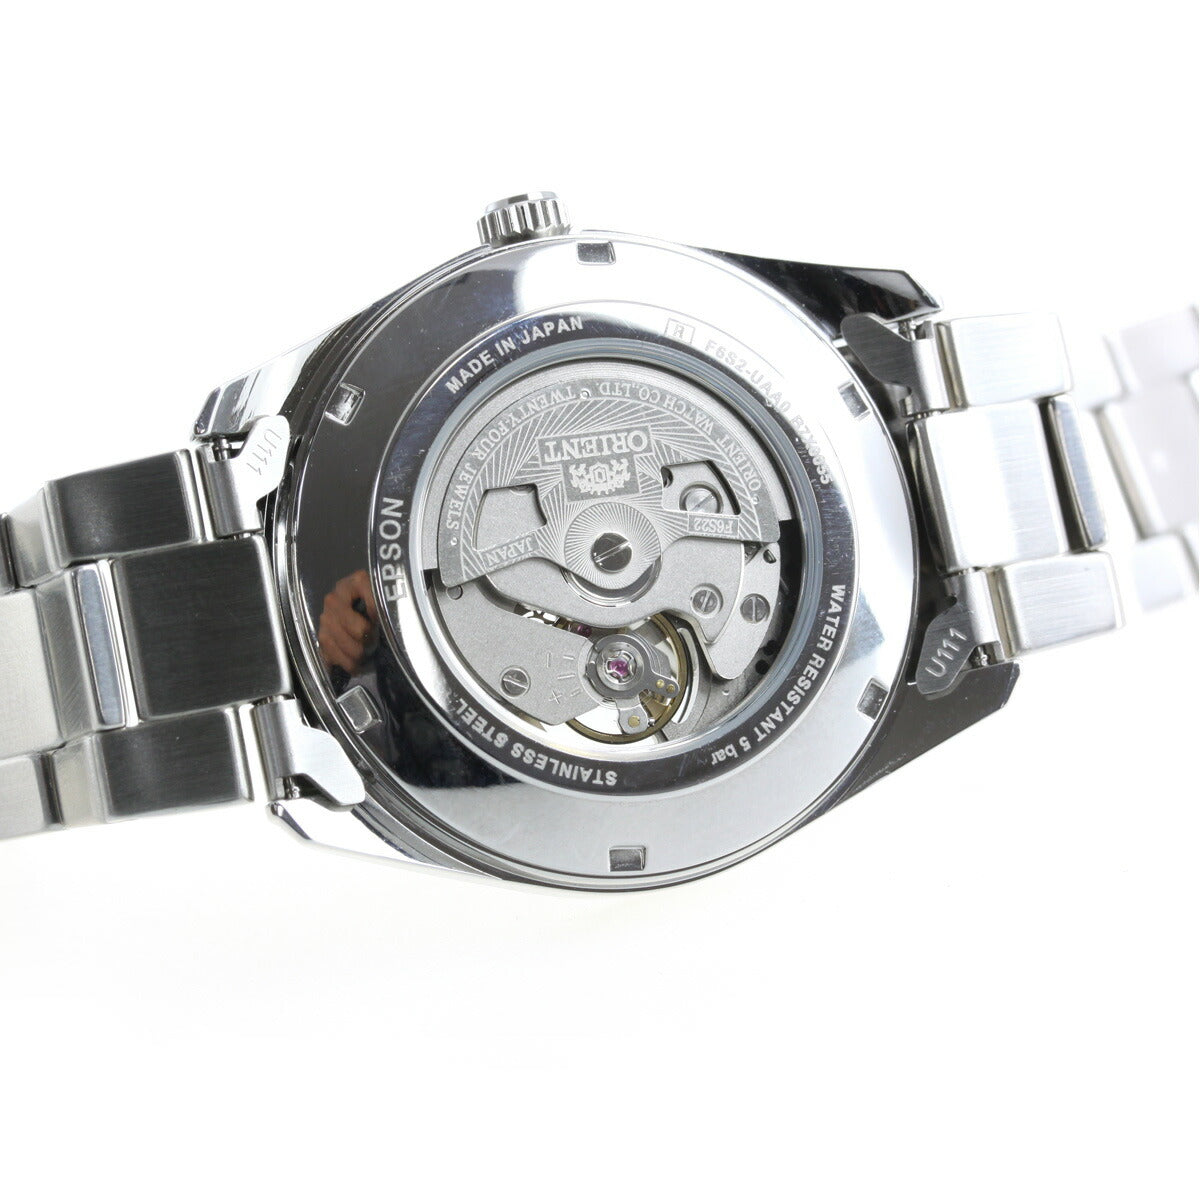 オリエント 腕時計 メンズ 自動巻き 機械式 ORIENT コンテンポラリー CONTEMPORARY セミスケルトン RN-AR0001B